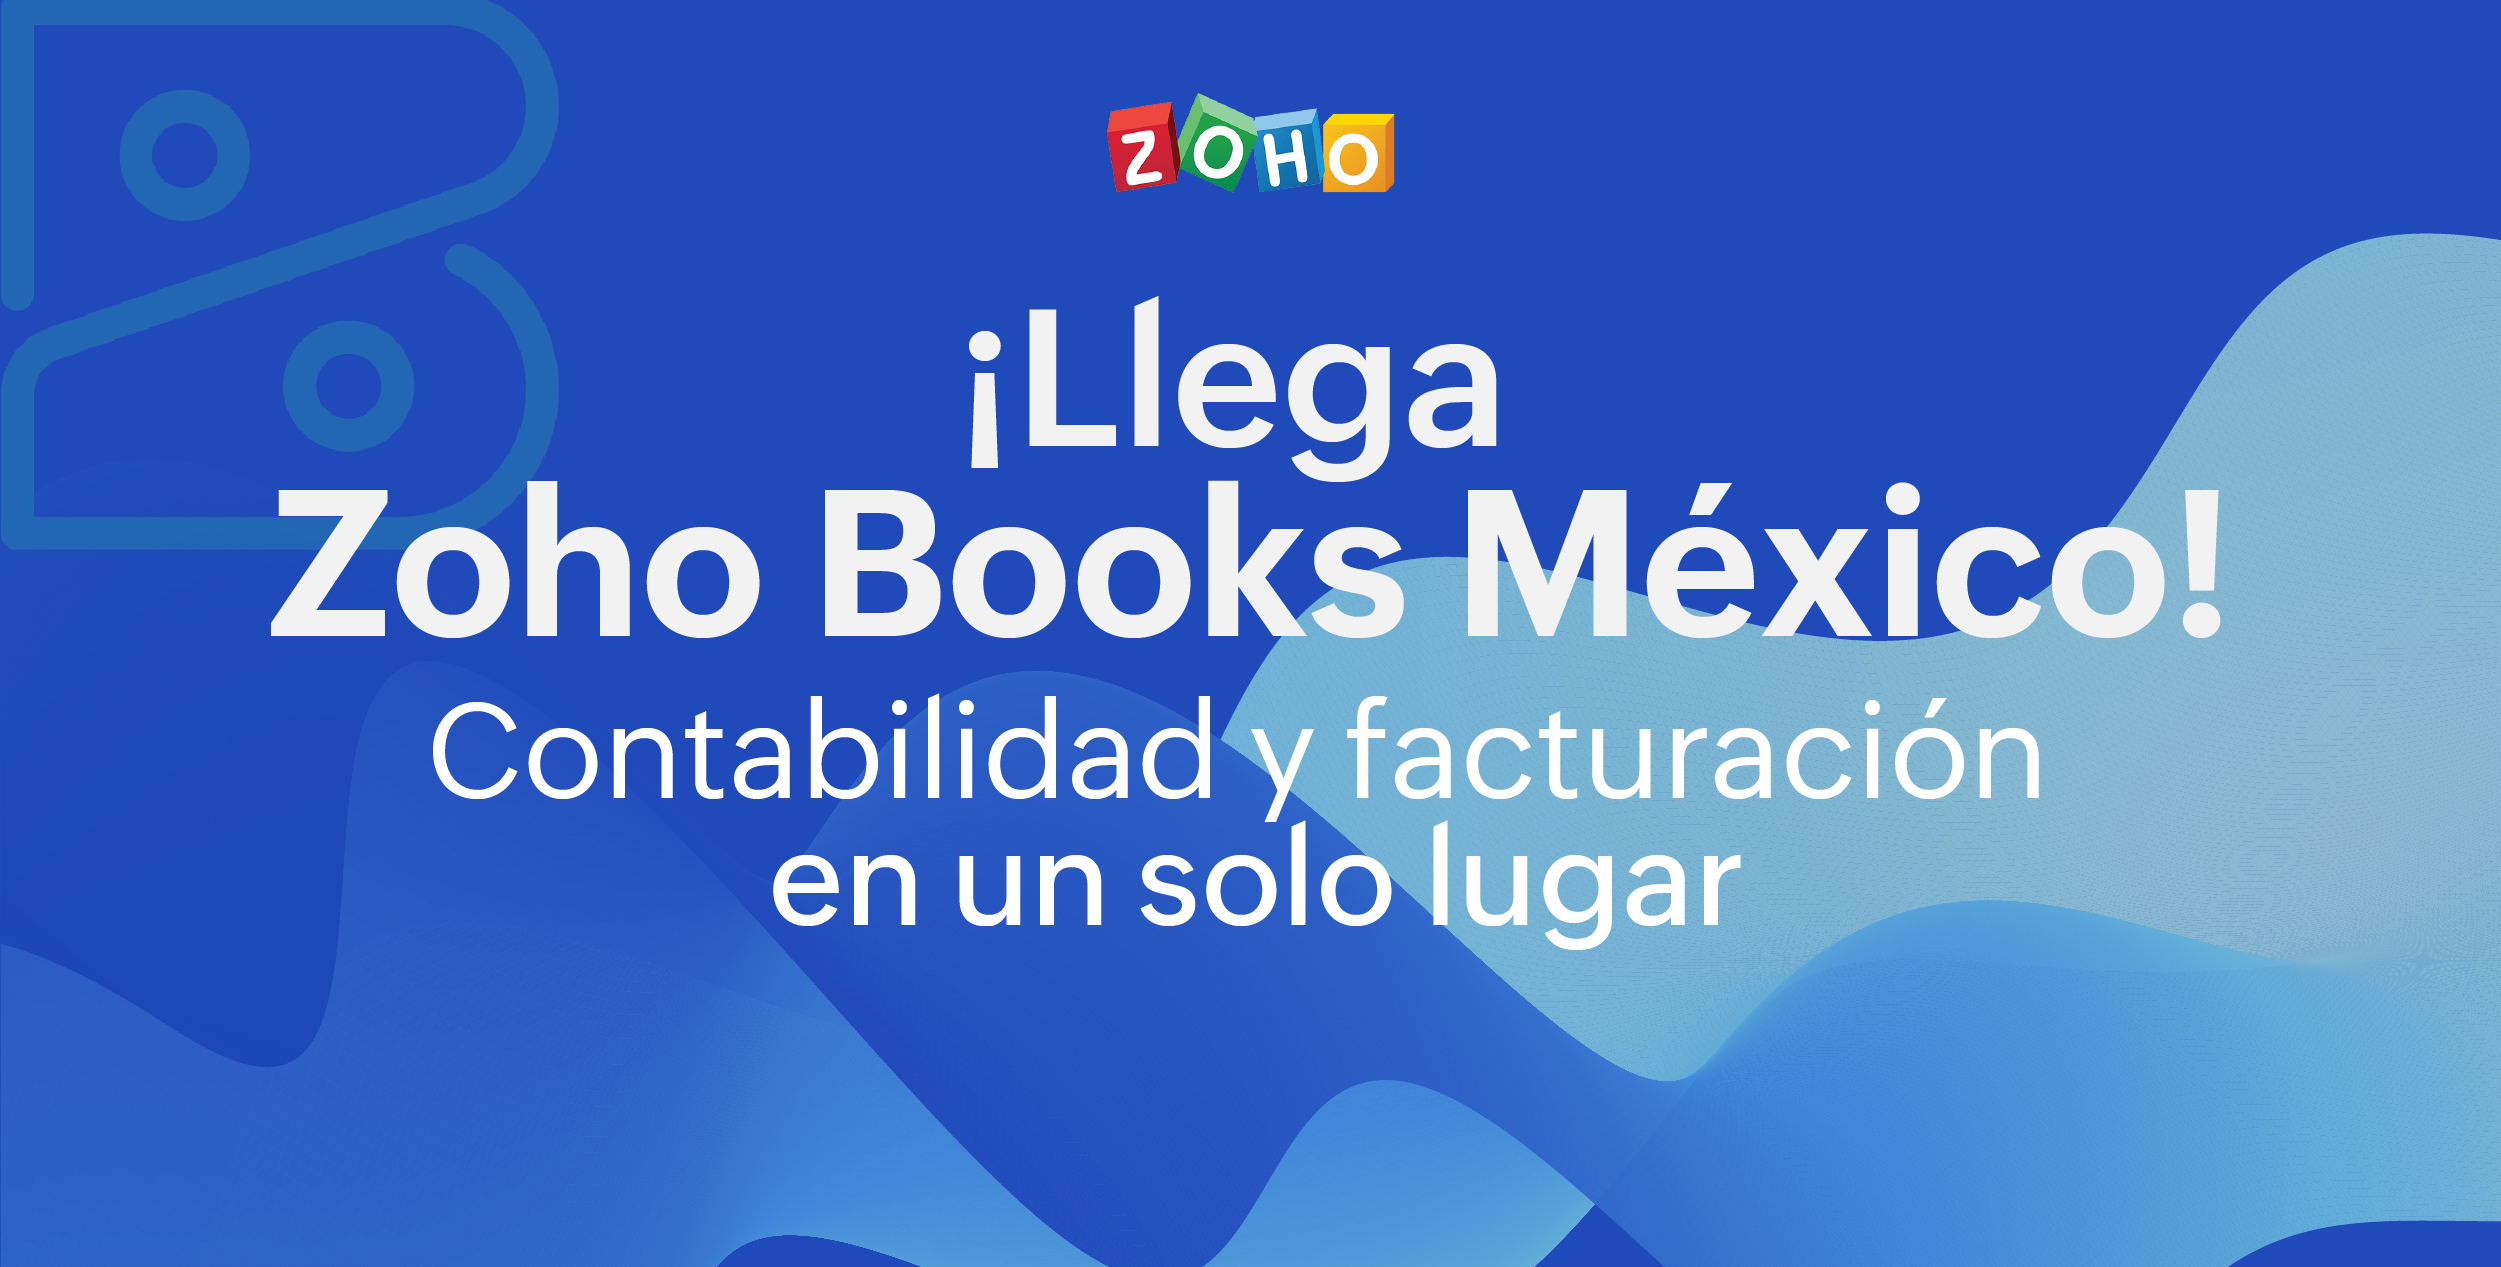 ¡Llega Zoho Books México! Software contable con facturación 4.0